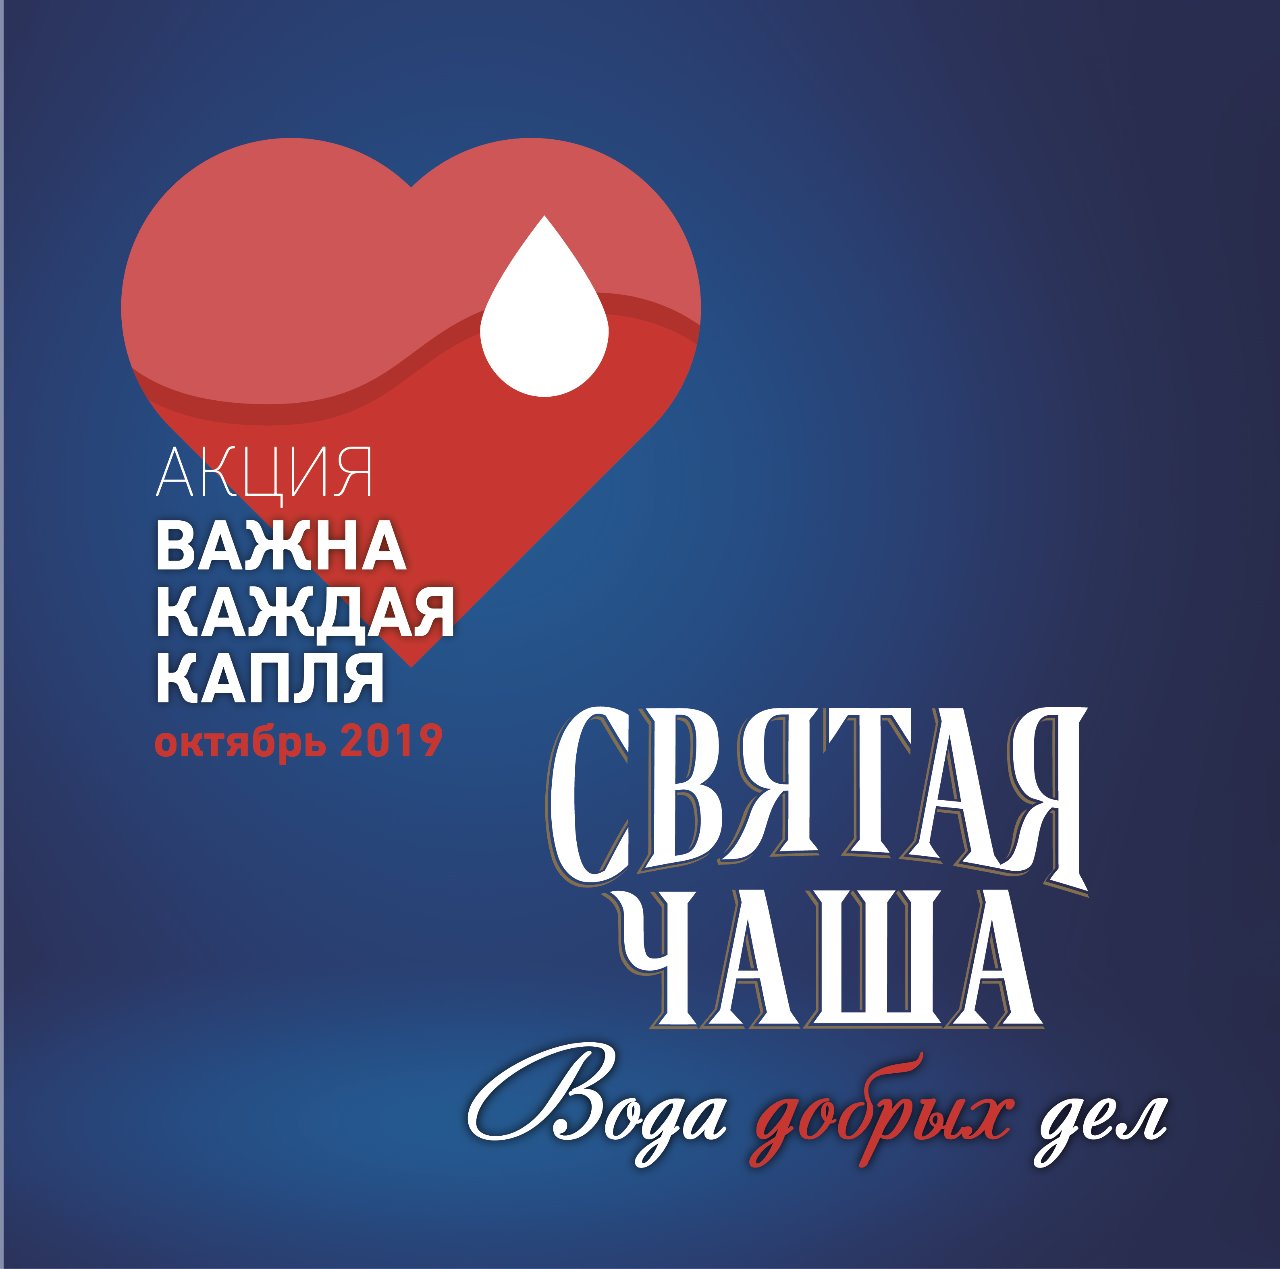 В Казани 15 октября пройдет донорская акция «Важна каждая капля»